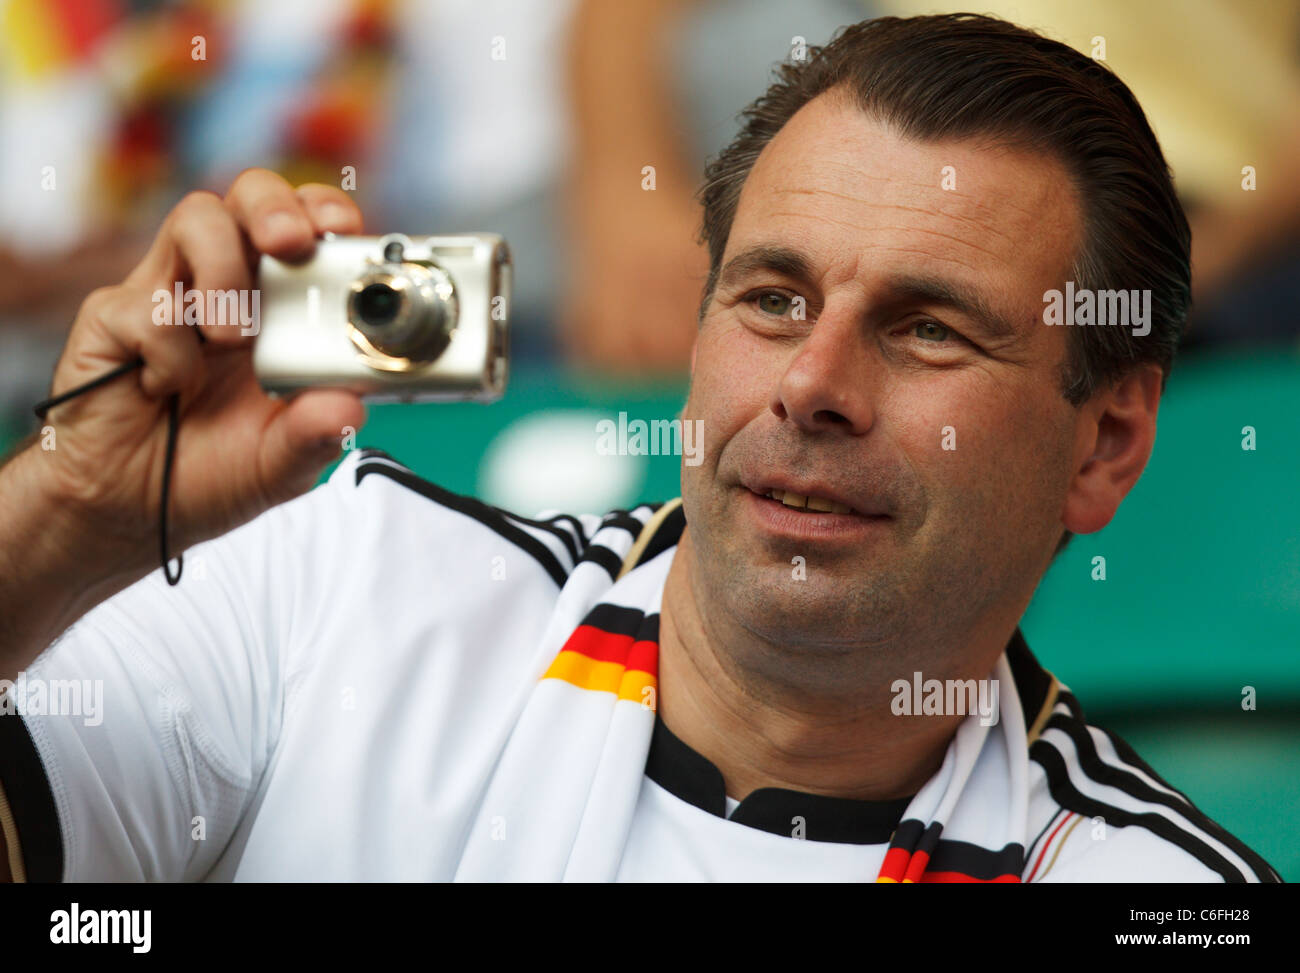 Un sostenitore della Germania prende le immagini a un 2011 Coppa del Mondo Donne quarterfinal partita di calcio tra la Germania e il Giappone. Foto Stock